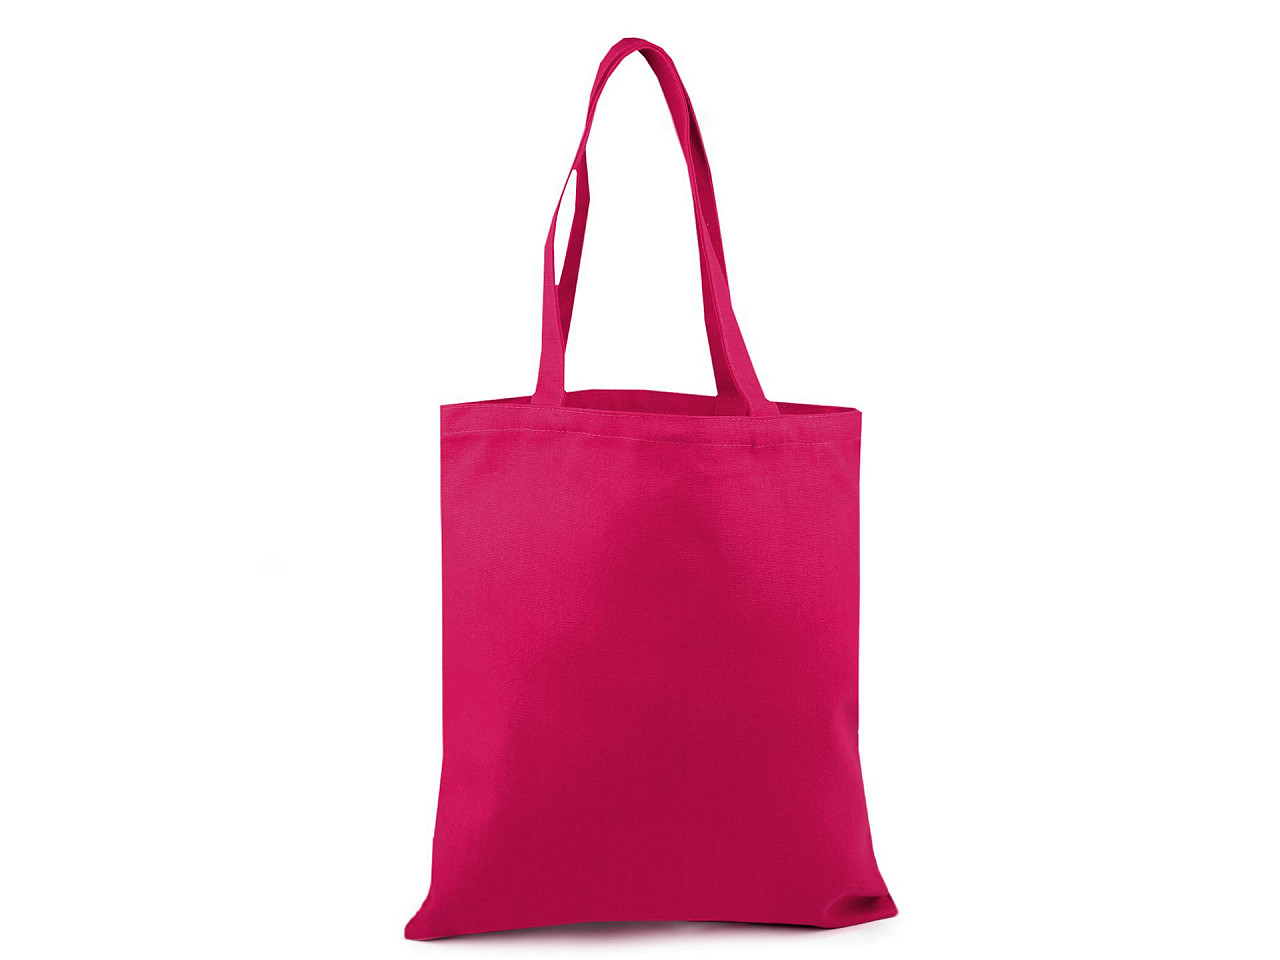 Geantă textil din bumbac pentru personalizare 35x39 cm, roz zmeură, 10 buc.